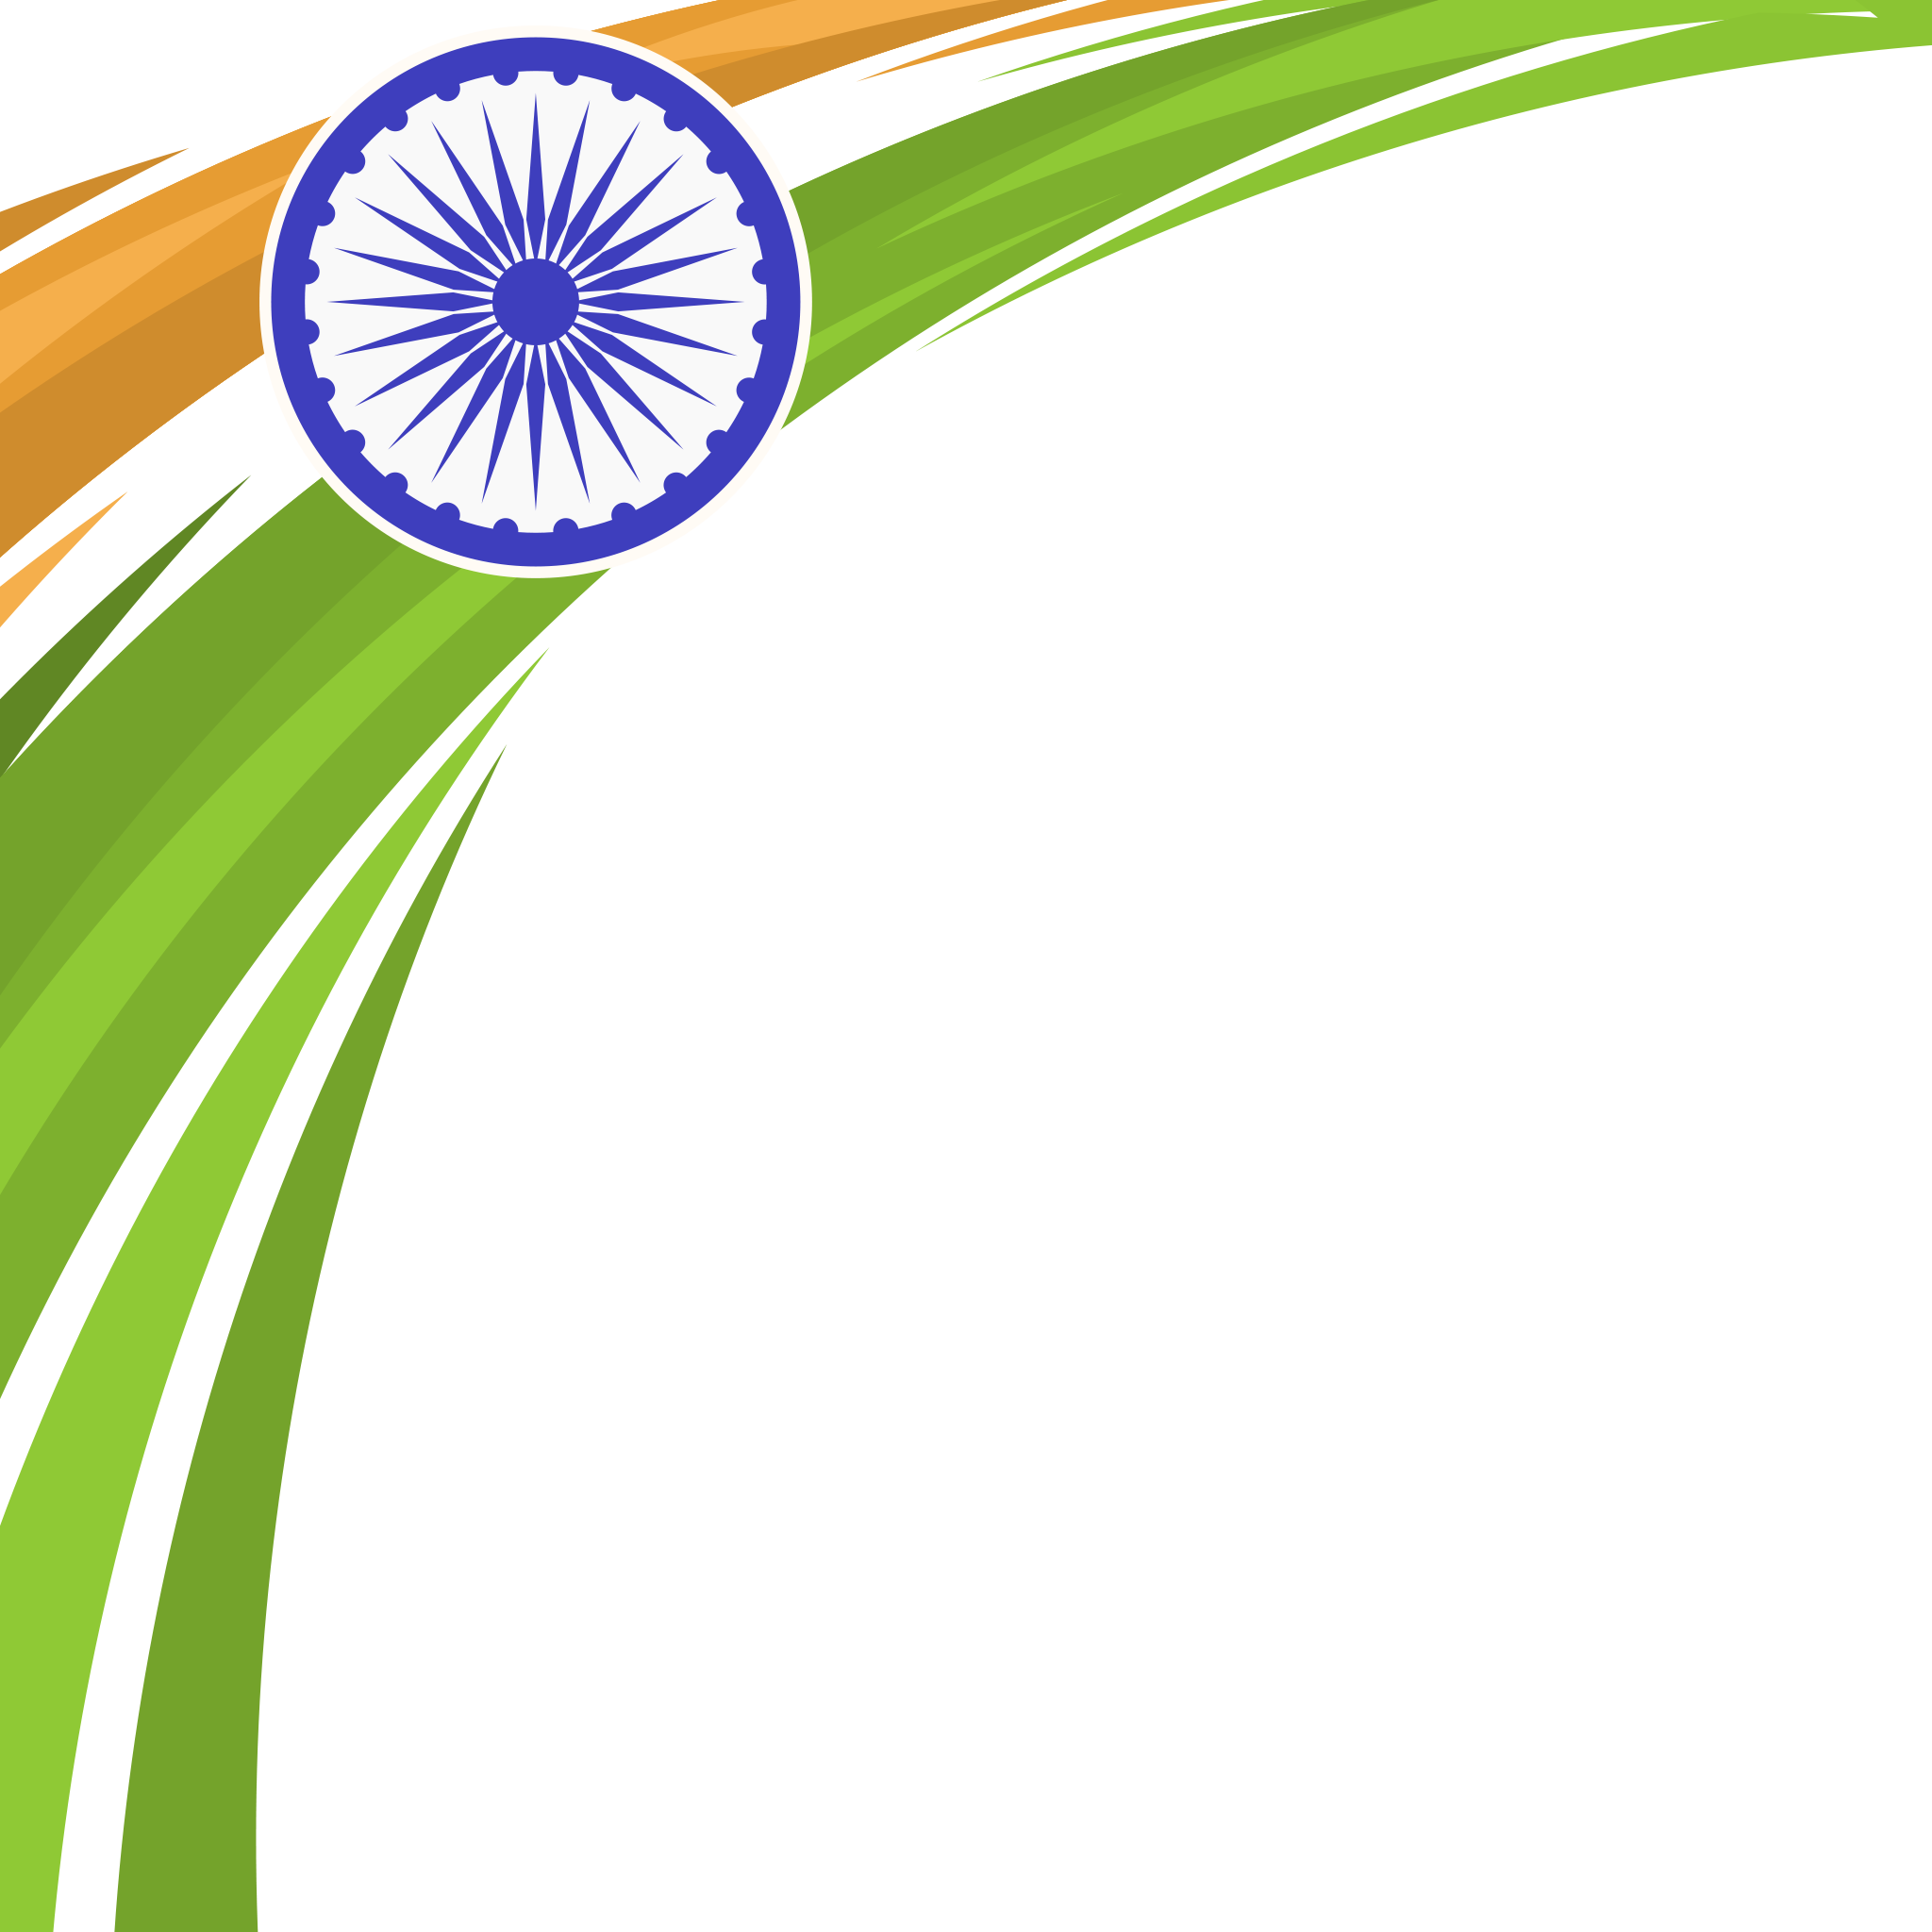 Indian Flag PNG Image File